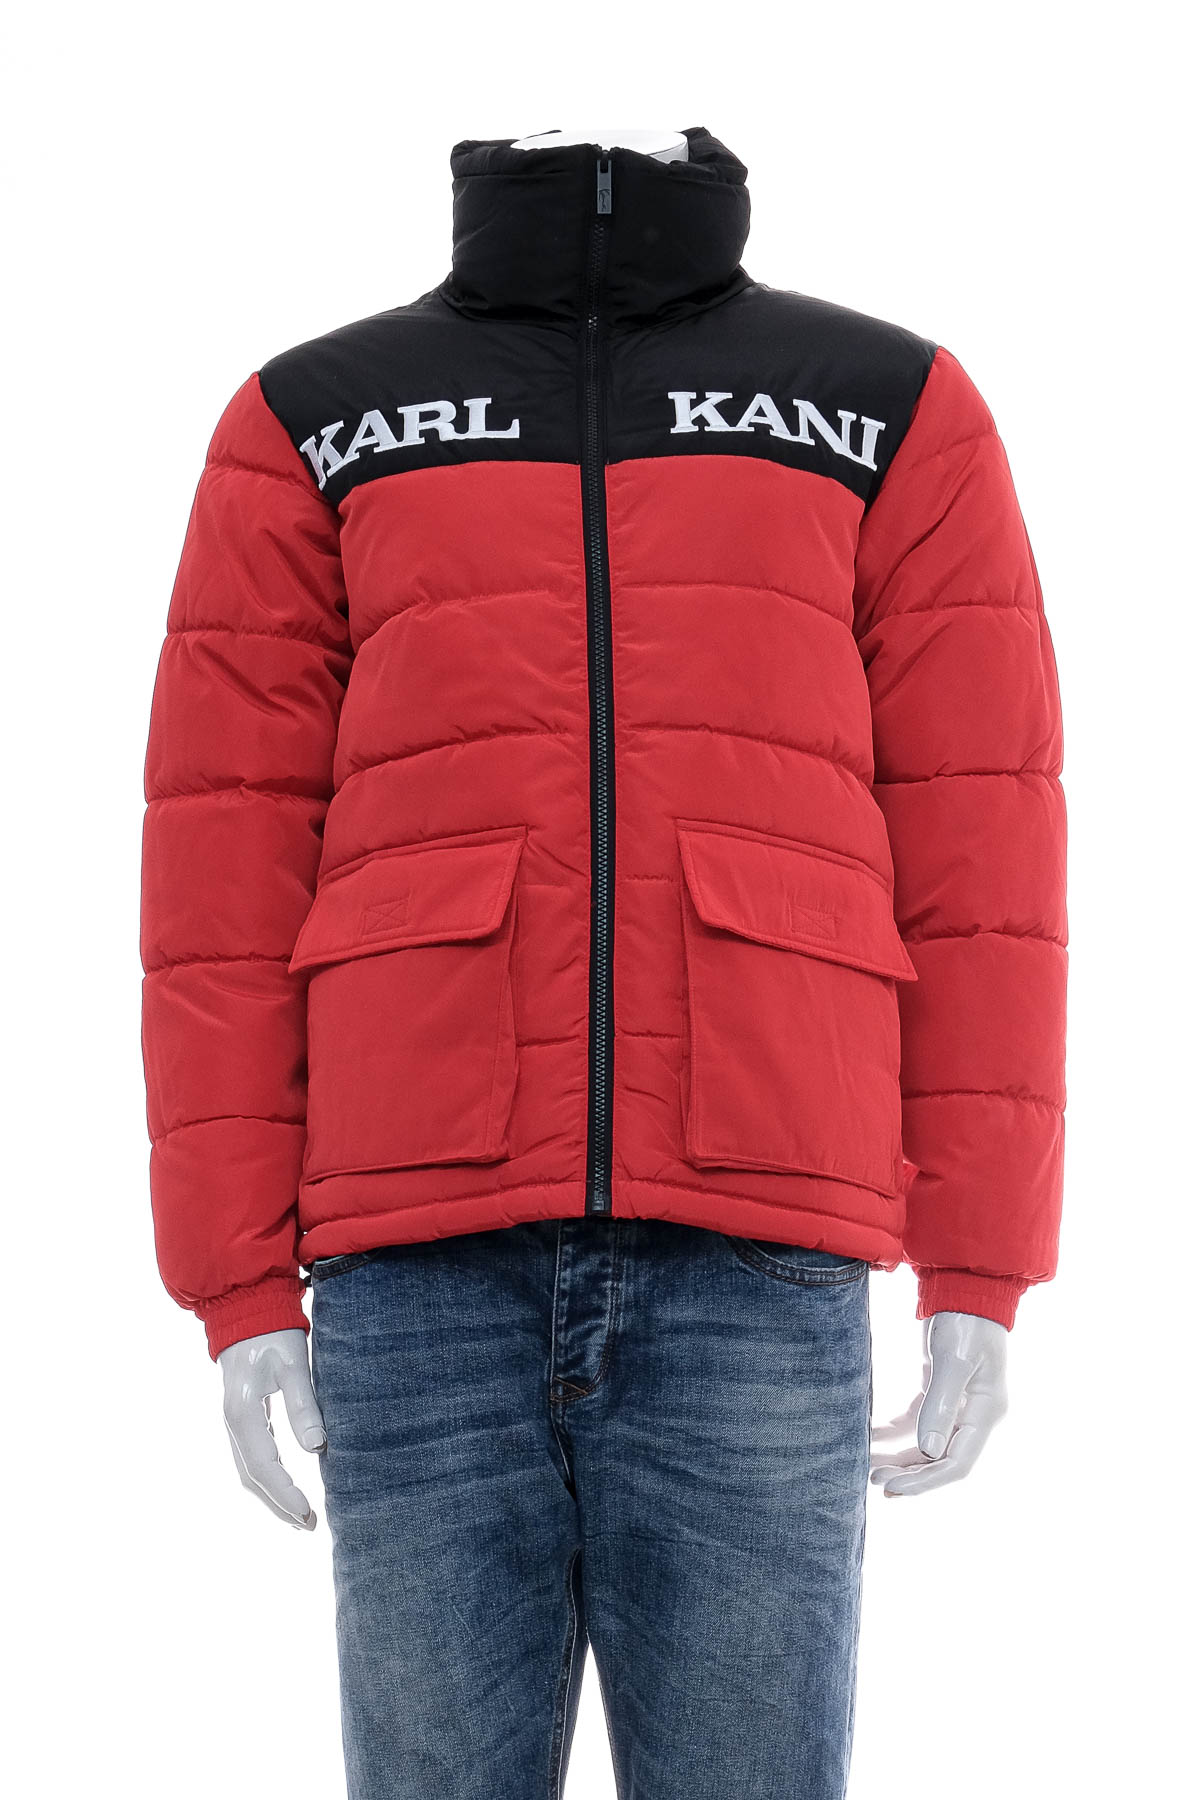 Men's jacket - KARL KANI - 0